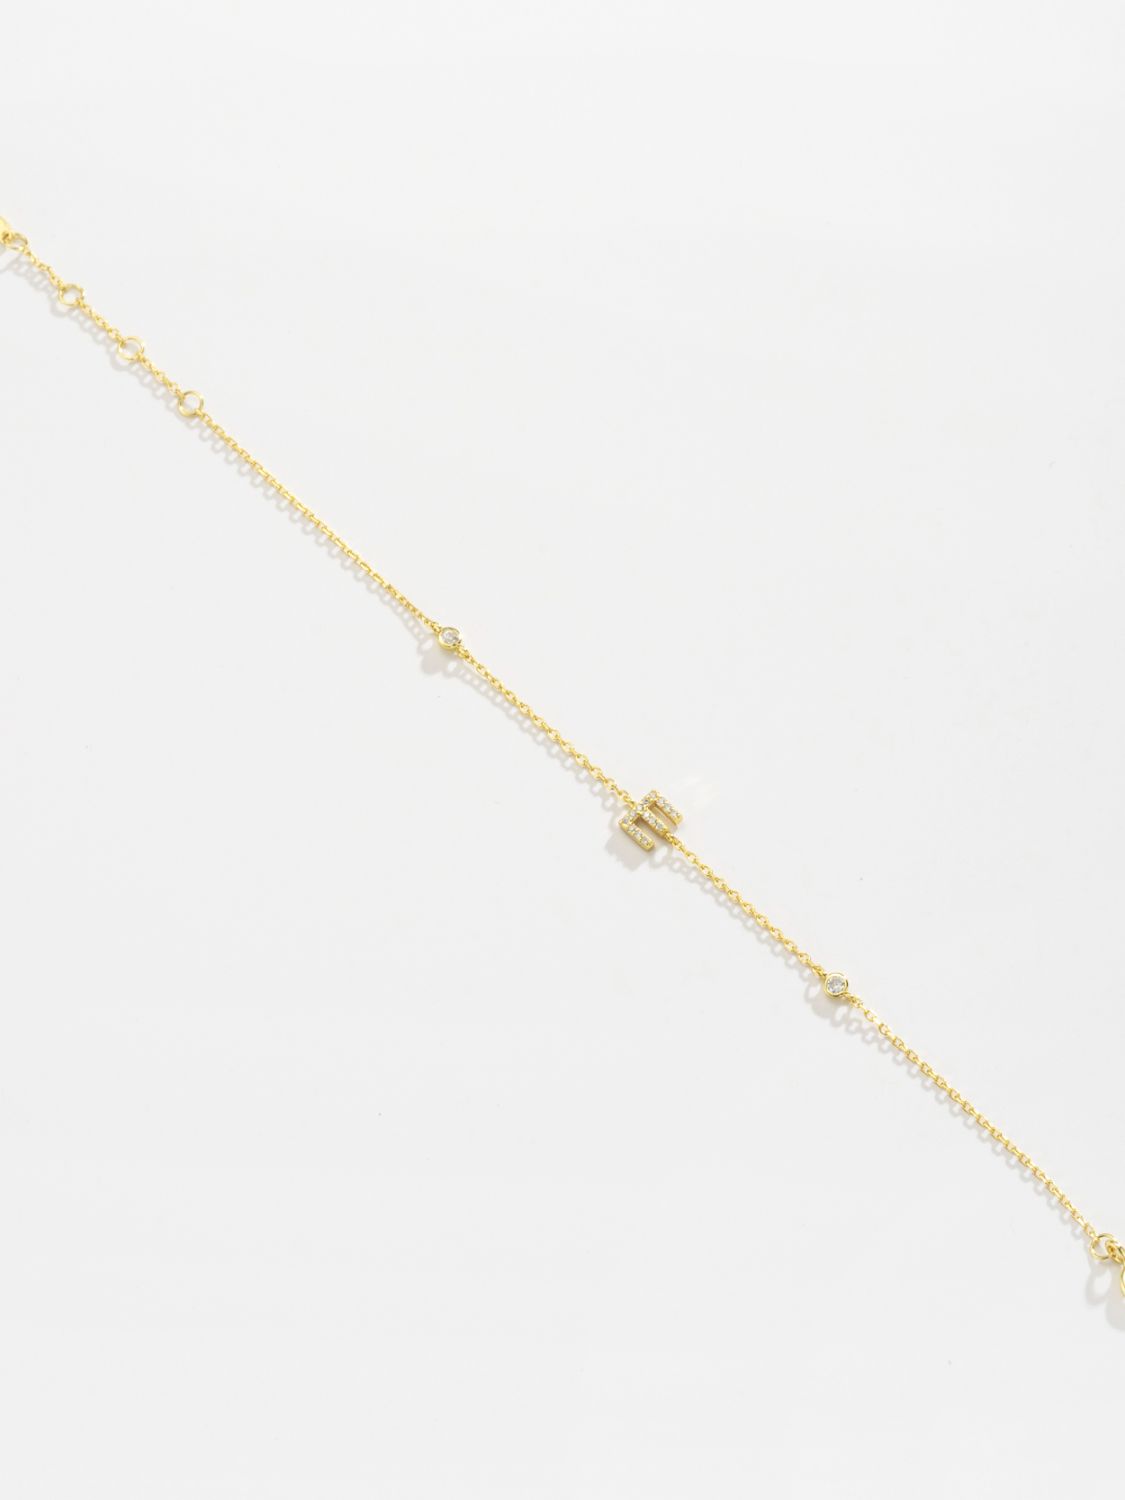 A To F Zircon 925 Sterling Silver Bracelet - Women’s Jewelry - Bracelets - 27 - 2024